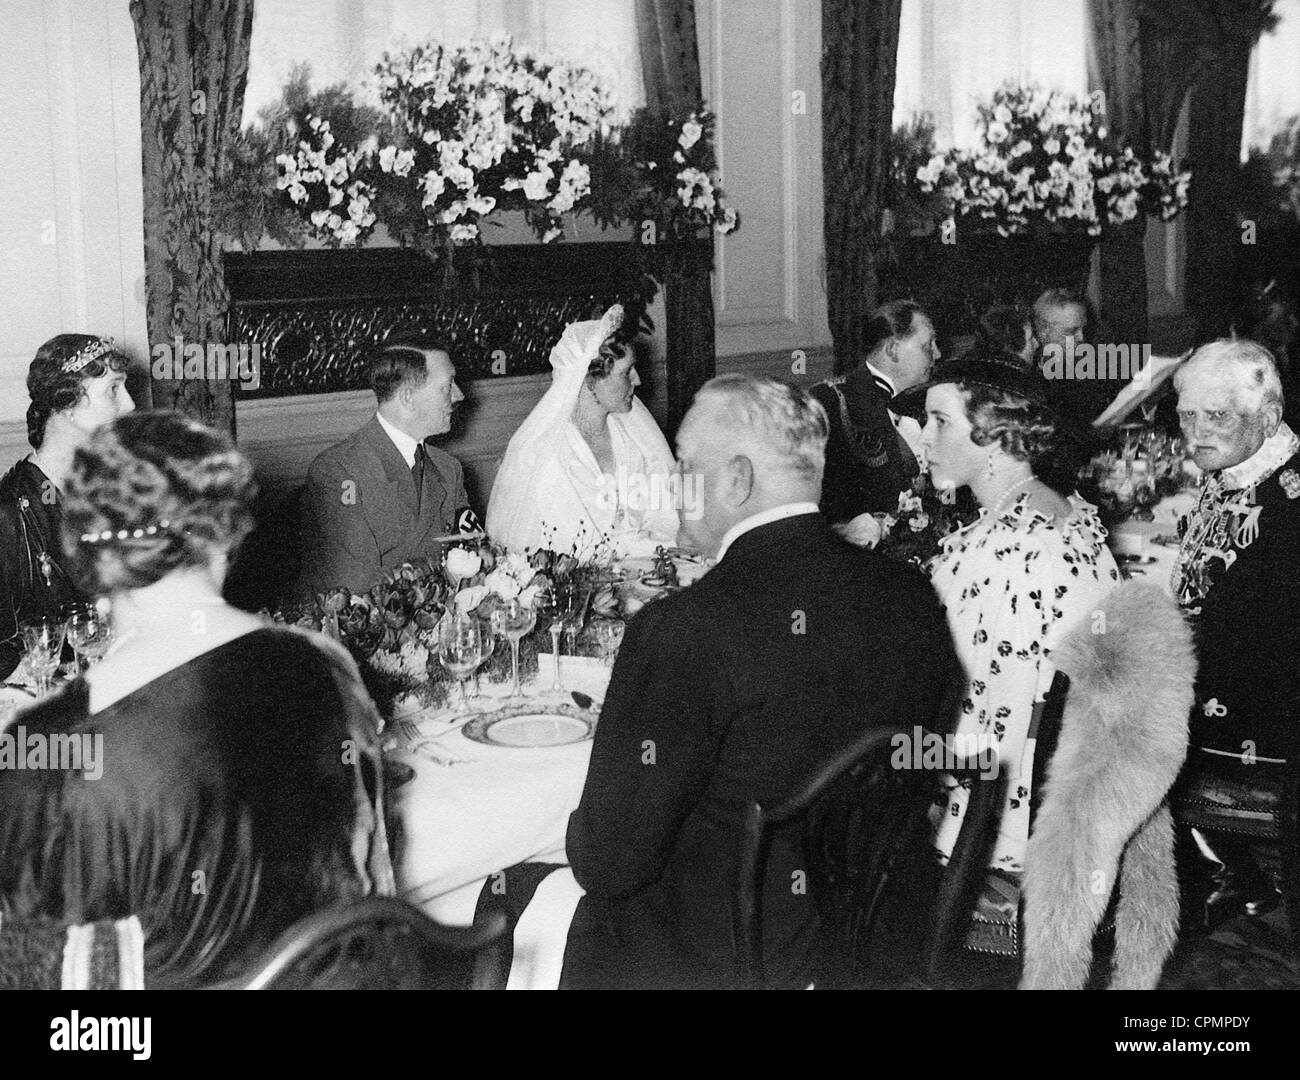 Adolf Hitler, Hermann Goering Emmy Goring, au banquet de mariage, 1935 Banque D'Images